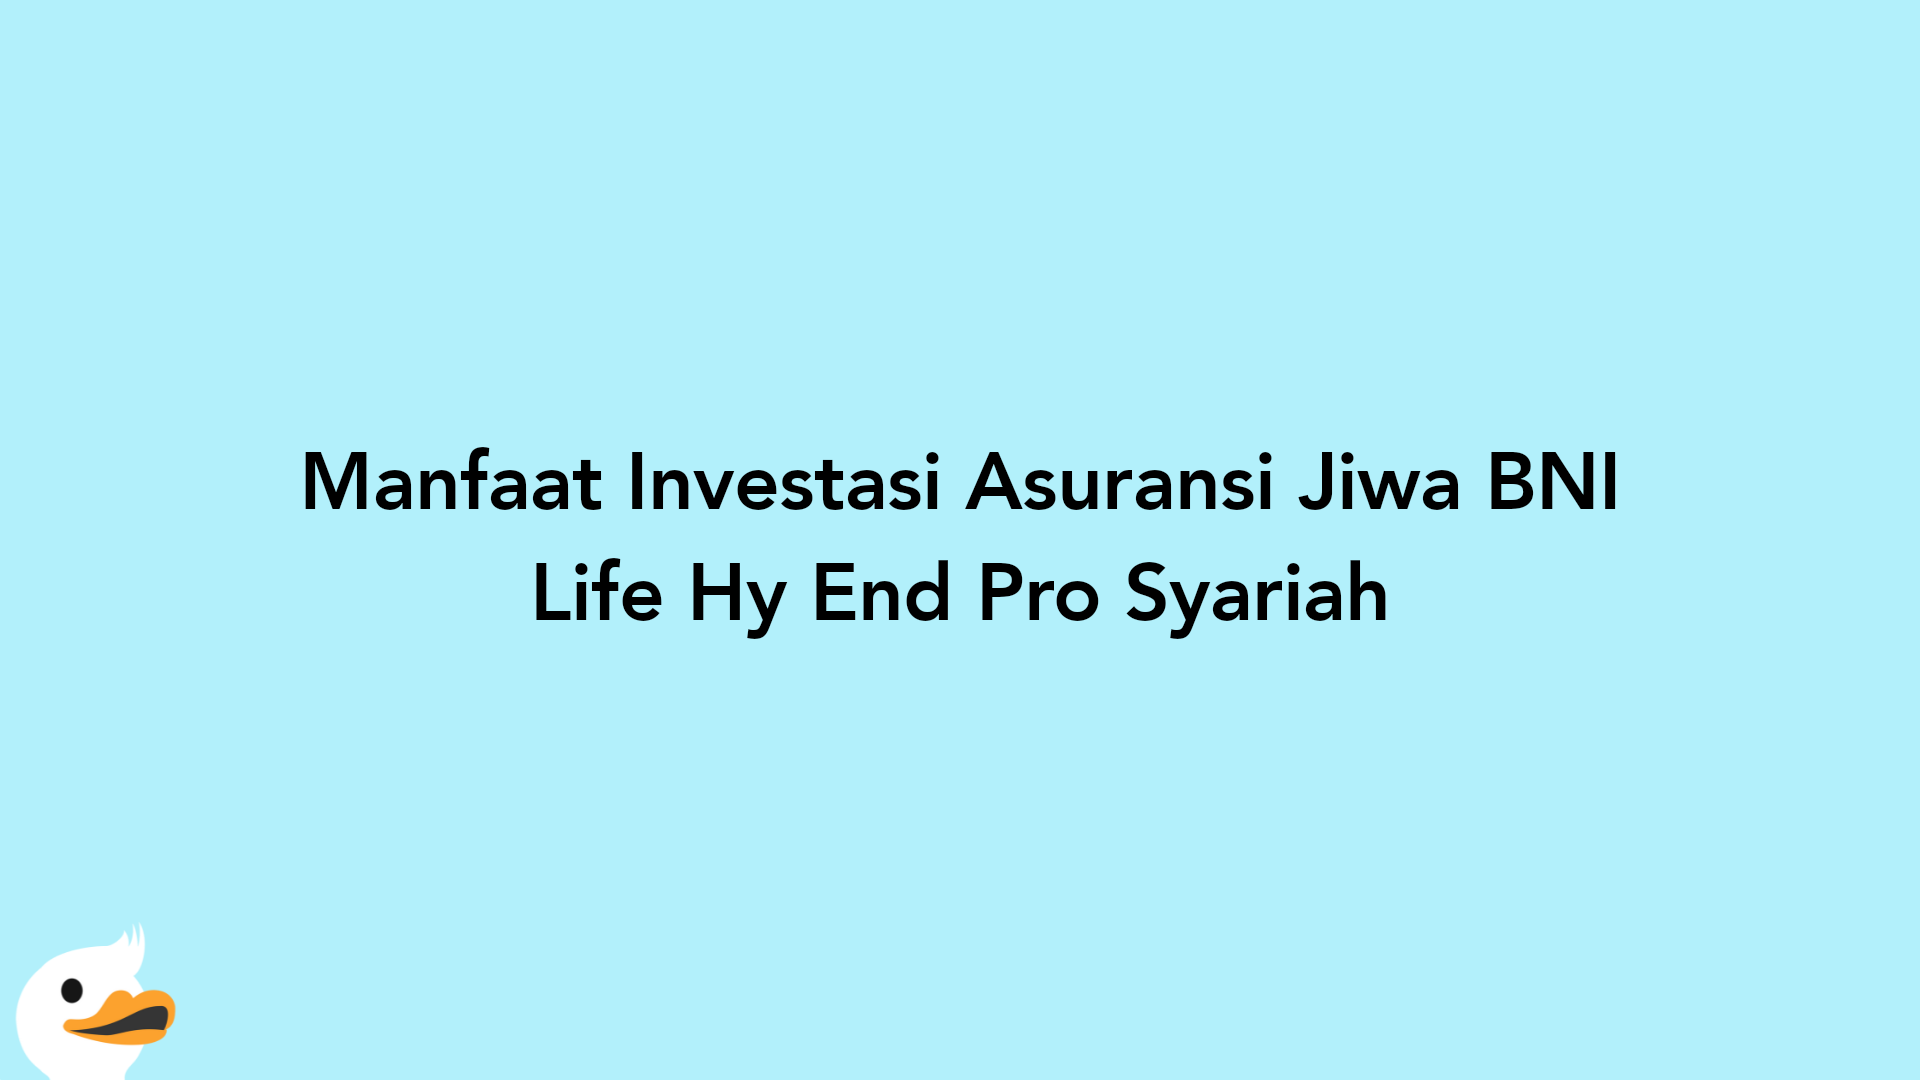 Manfaat Investasi Asuransi Jiwa BNI Life Hy End Pro Syariah